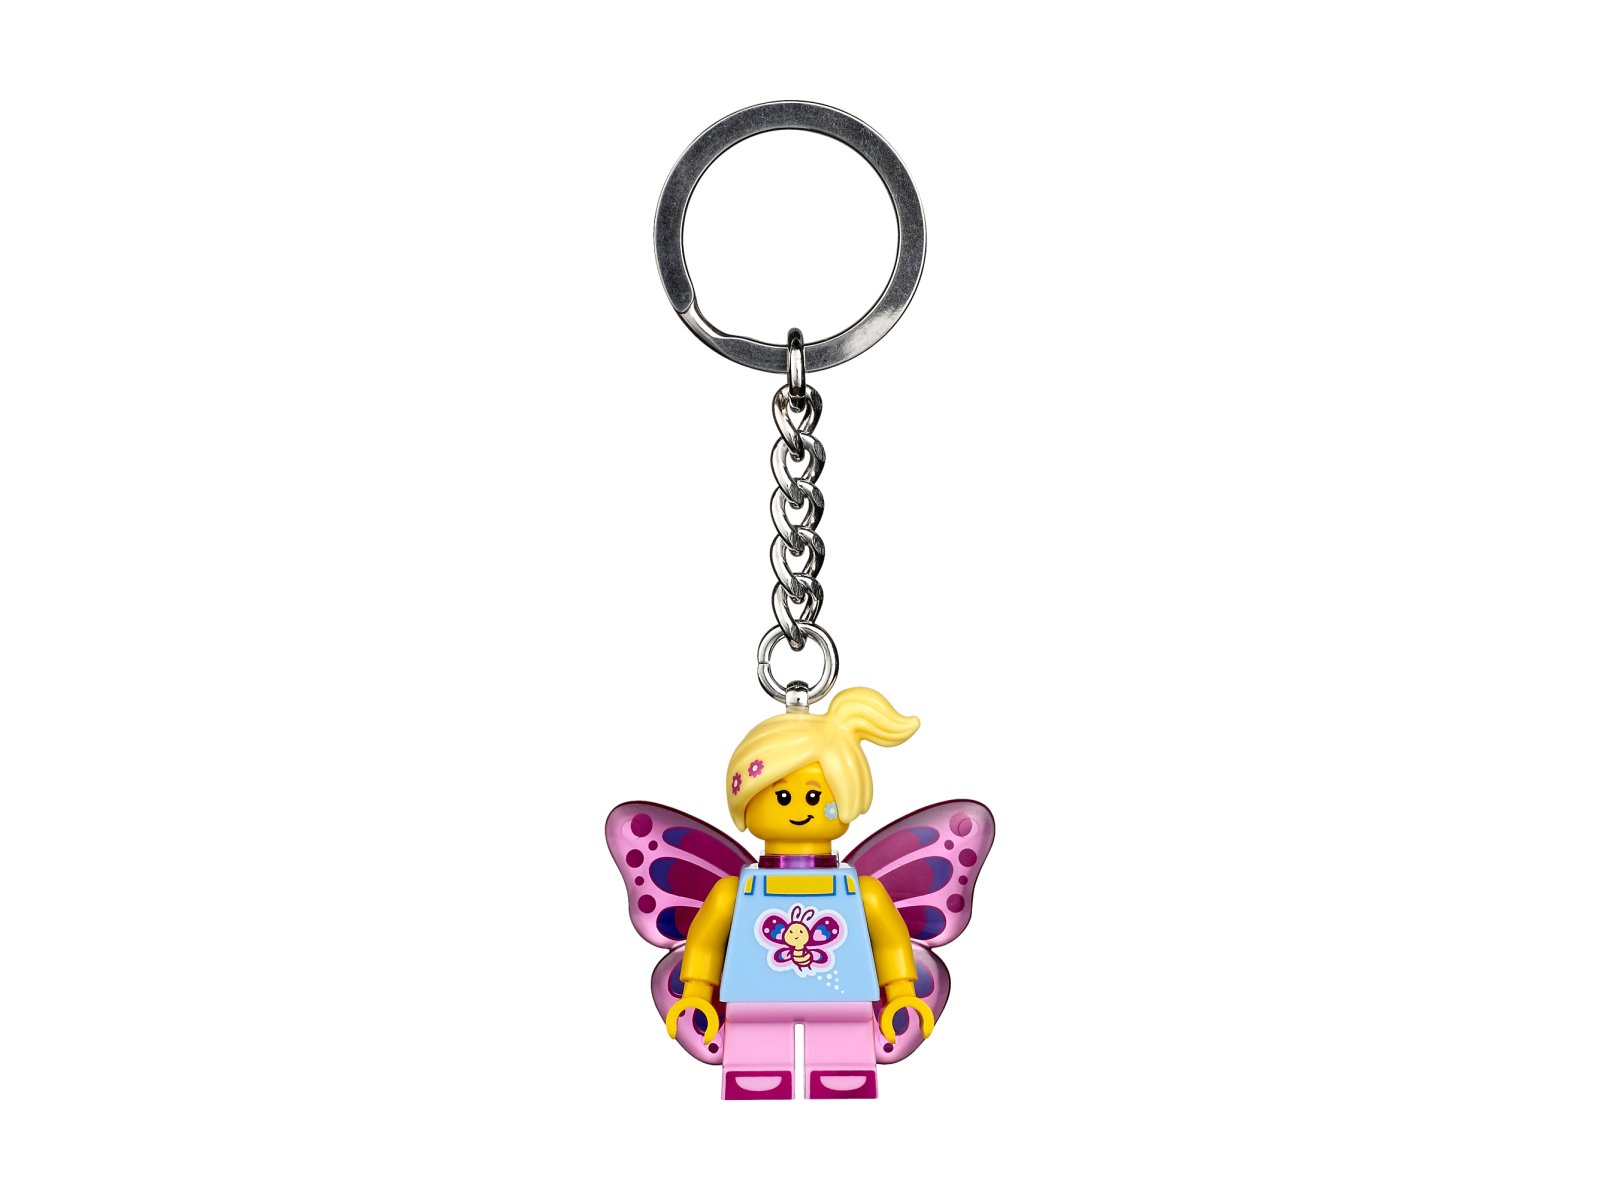 LEGO 853795 Breloczek z dziewczyną motylem